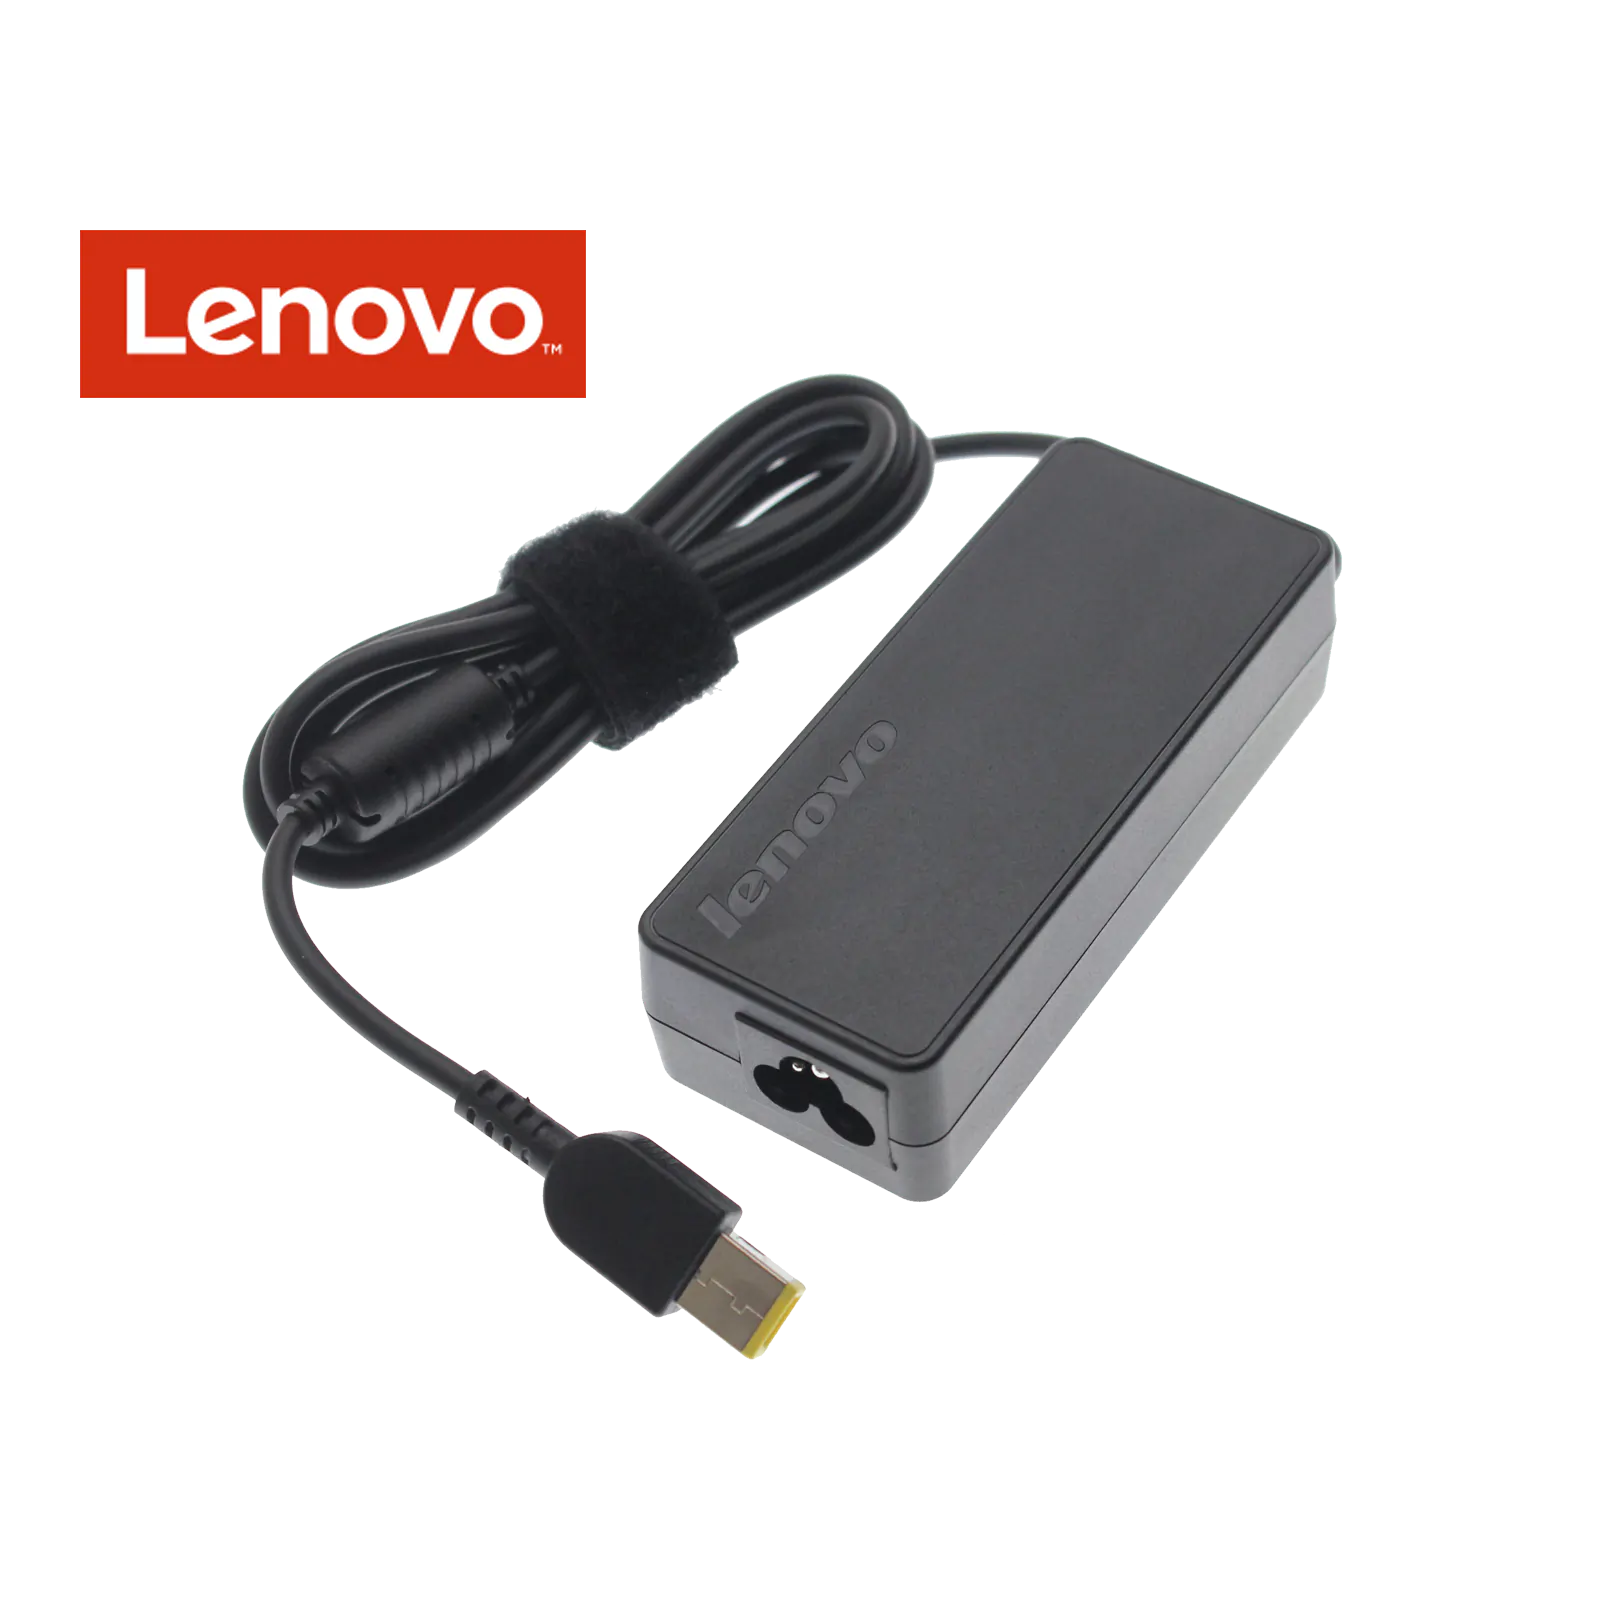 Lenovo ThinkPad E450c, E550c Adaptör Şarj Aleti-Cihazı